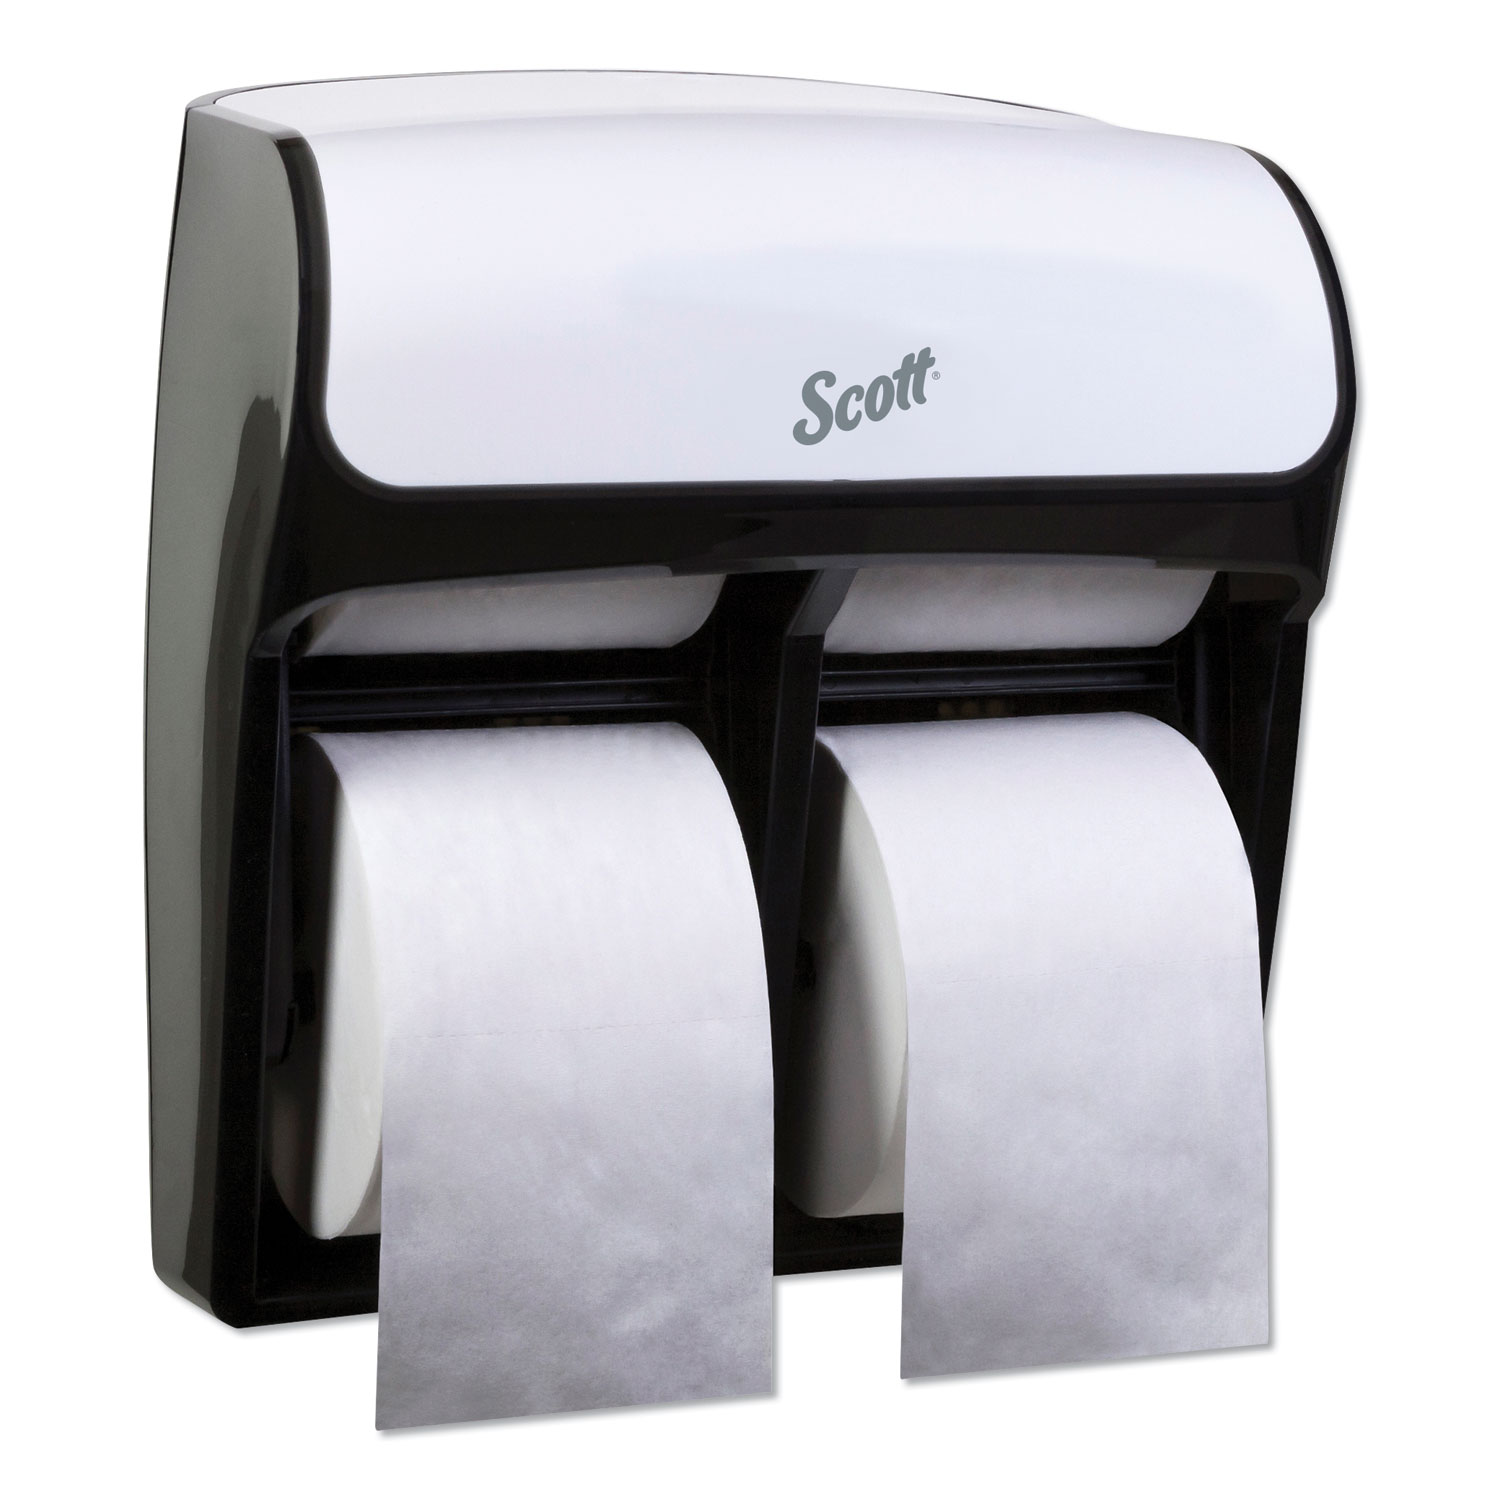  Scott 44517 Pro High Capacity Coreless SRB Tissue Dispenser, 11 1/4 x 6 5/16 x 12 3/4, White (KCC44517) 